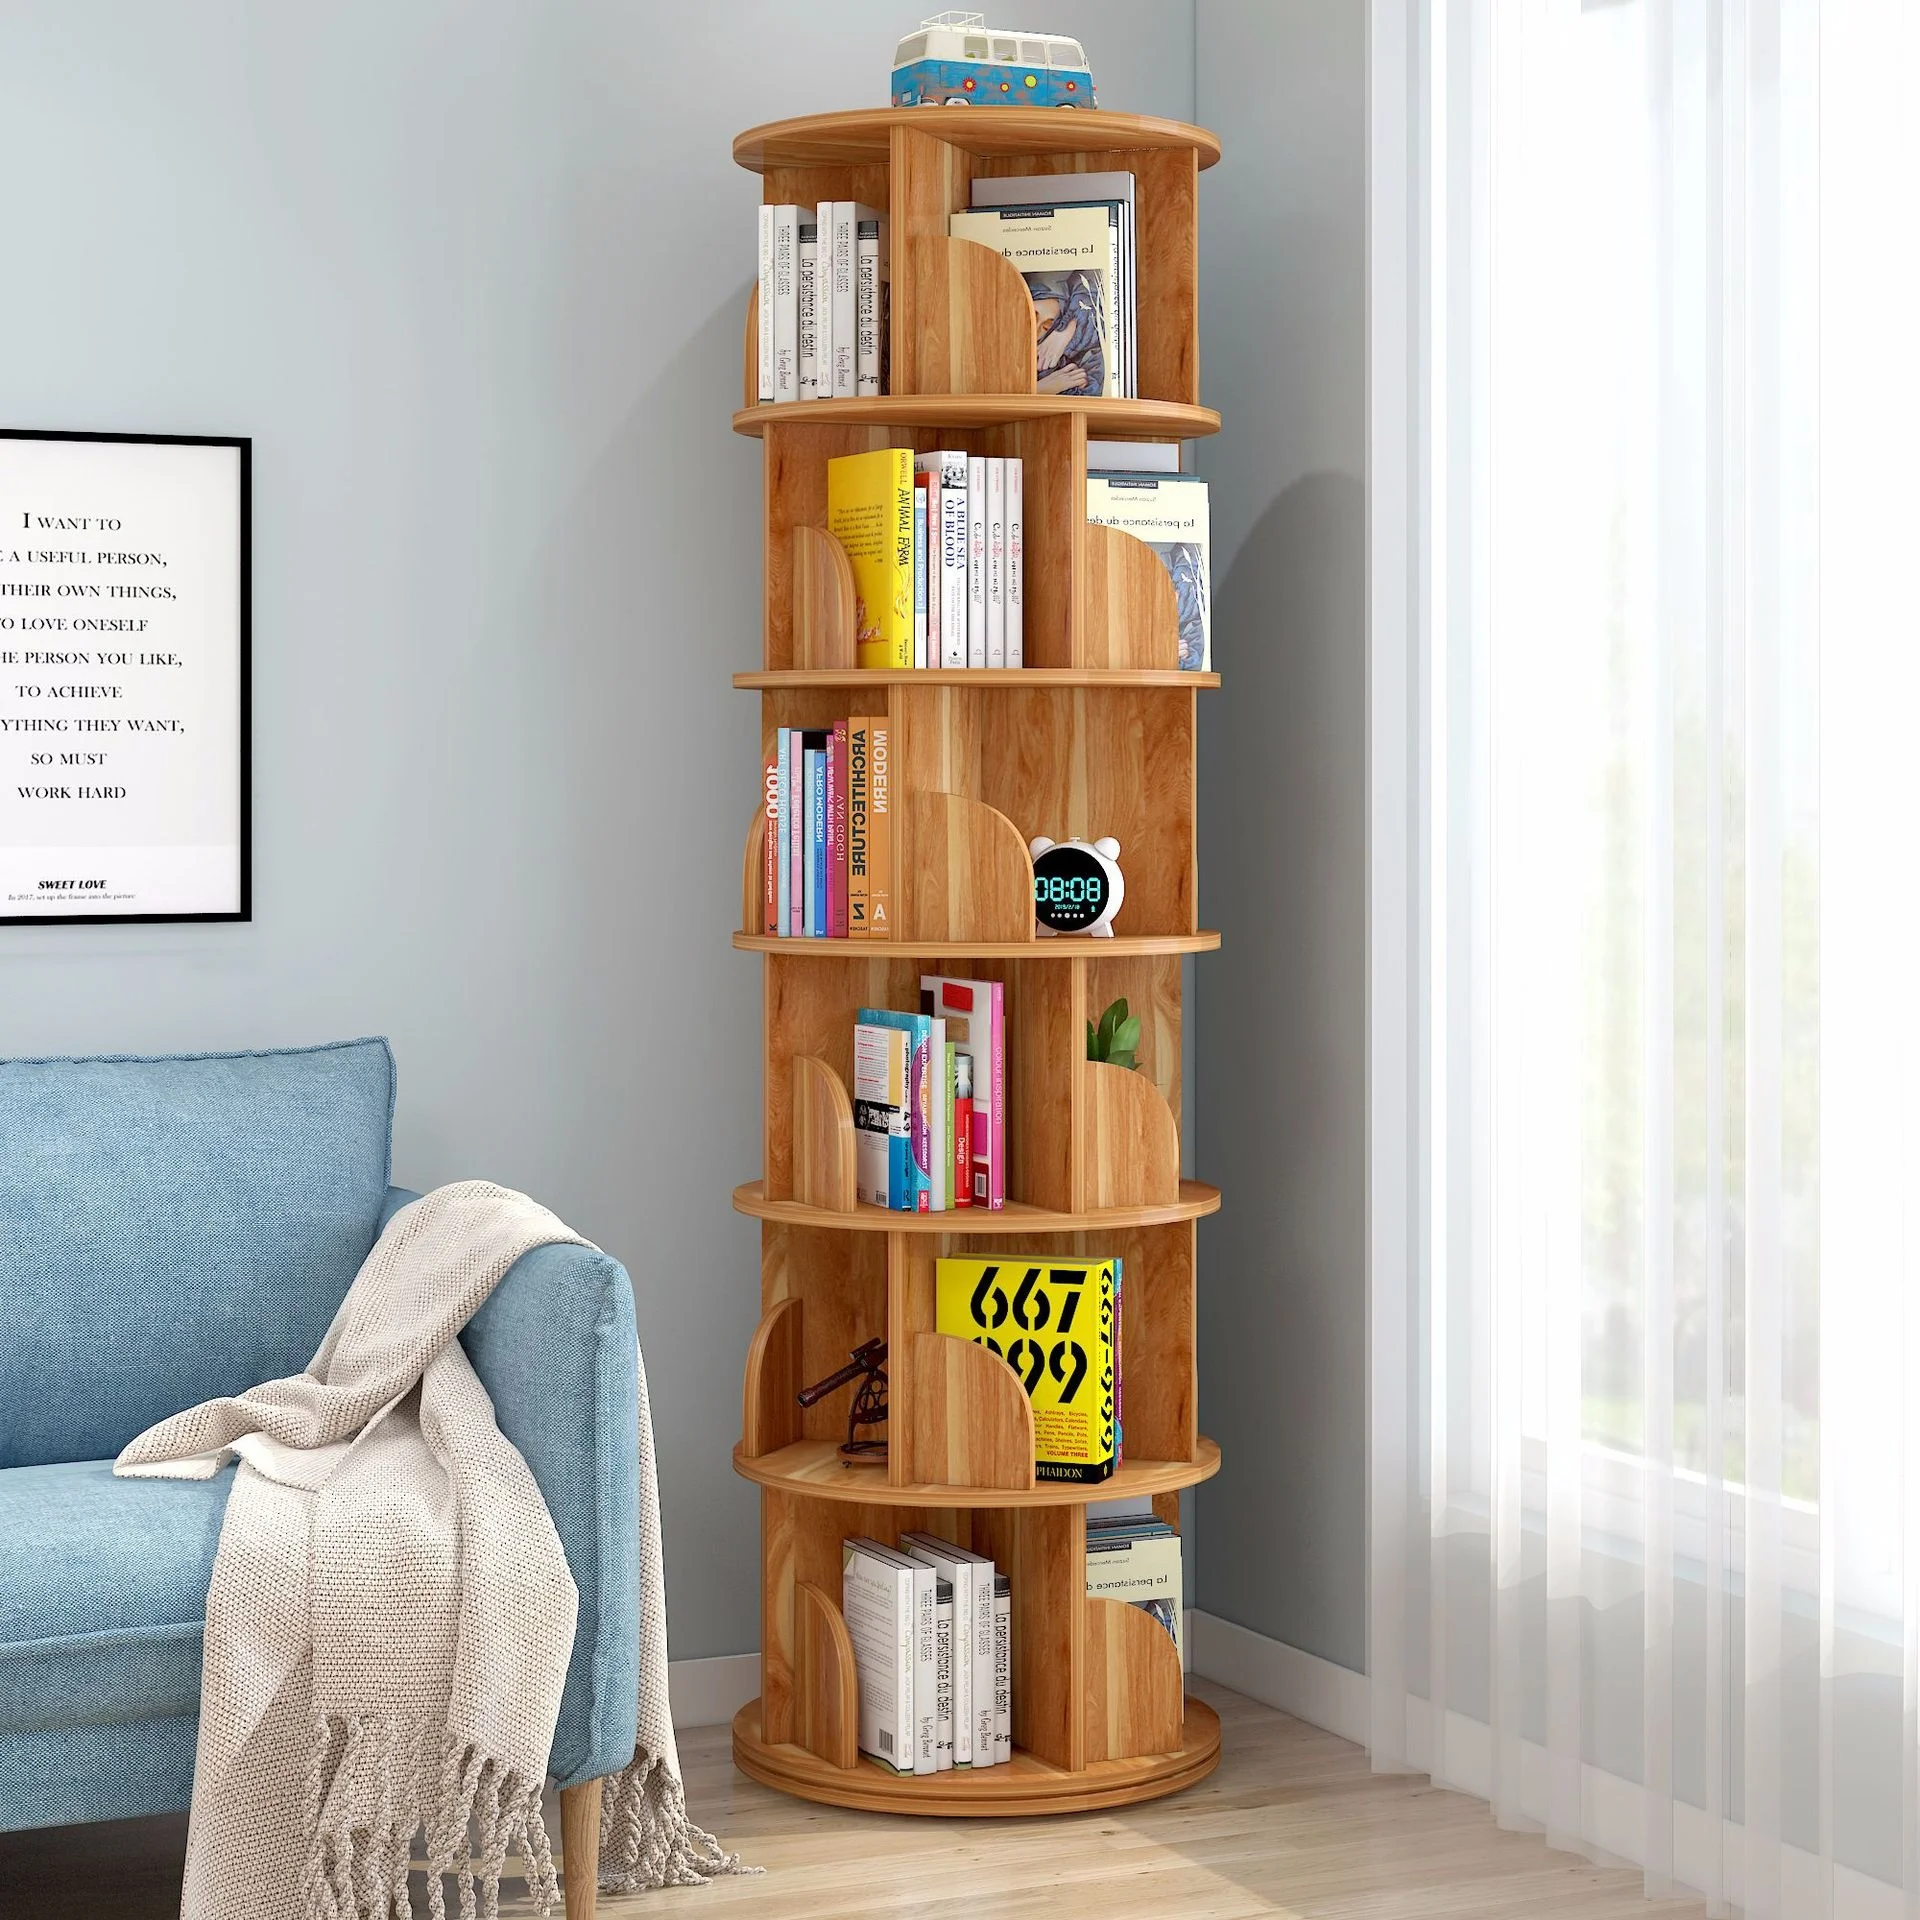 

этажерка полка для книг этажерка стеллаж New Rotating Bookshelf Book Shelf мебель для дома Study Room Furniture Shelves رفوف